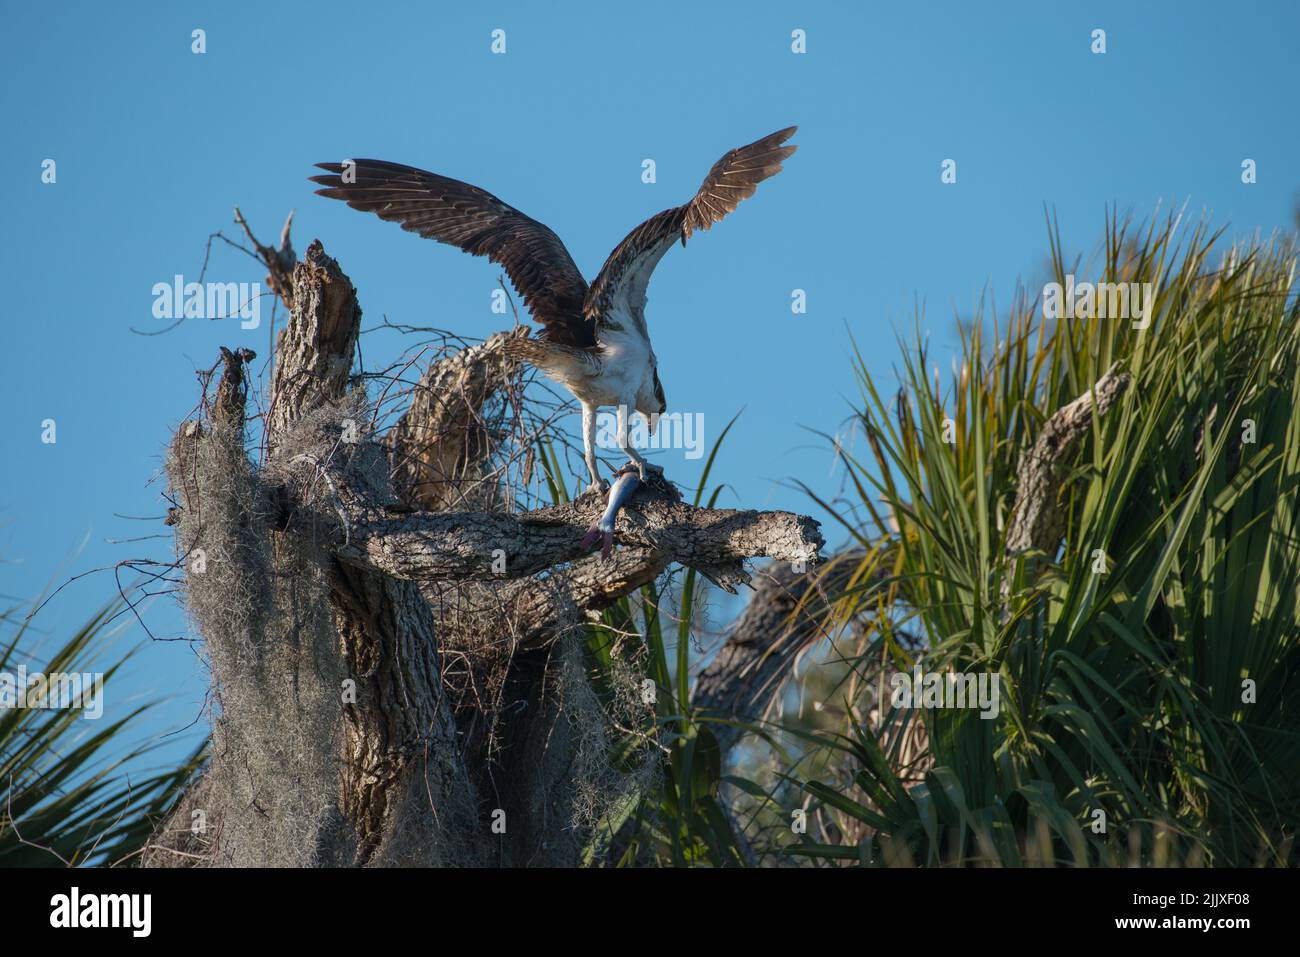 Águilas pescadoras con alas se extienden recogiendo un pez mientras se alza sobre un árbol muerto, Tera CEIA Preserve State Park, Florida, EE.UU Foto de stock